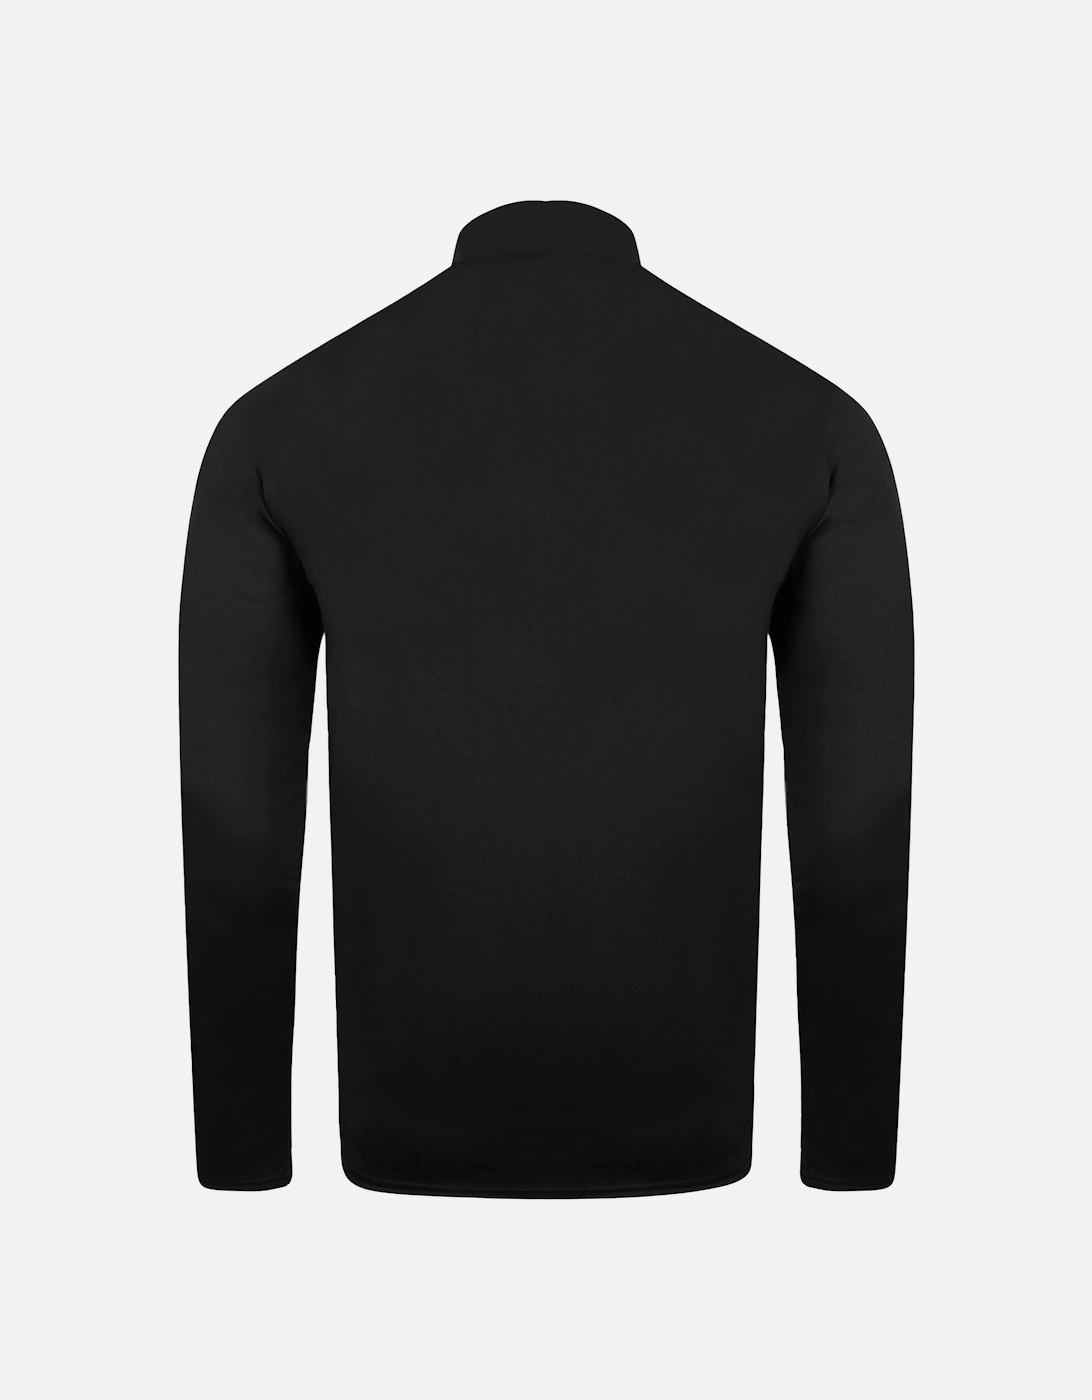 Womens/Ladies Club Essential Half Zip Sweatshirt